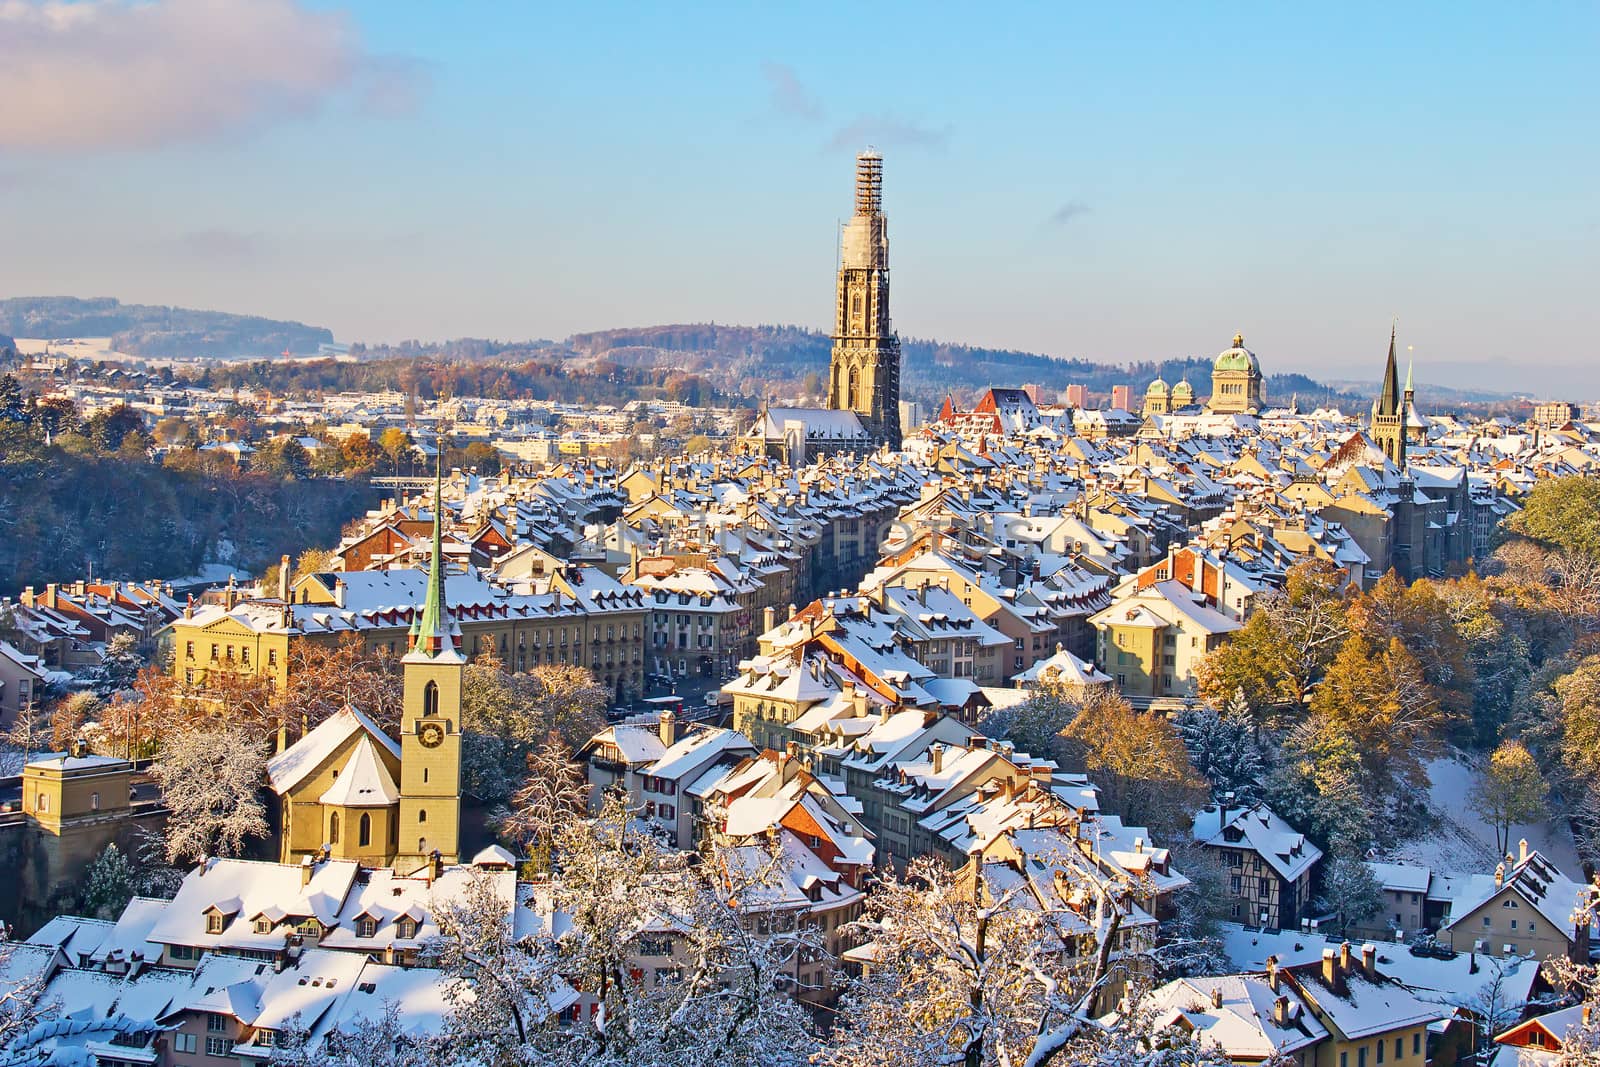 Bern in winter by swisshippo